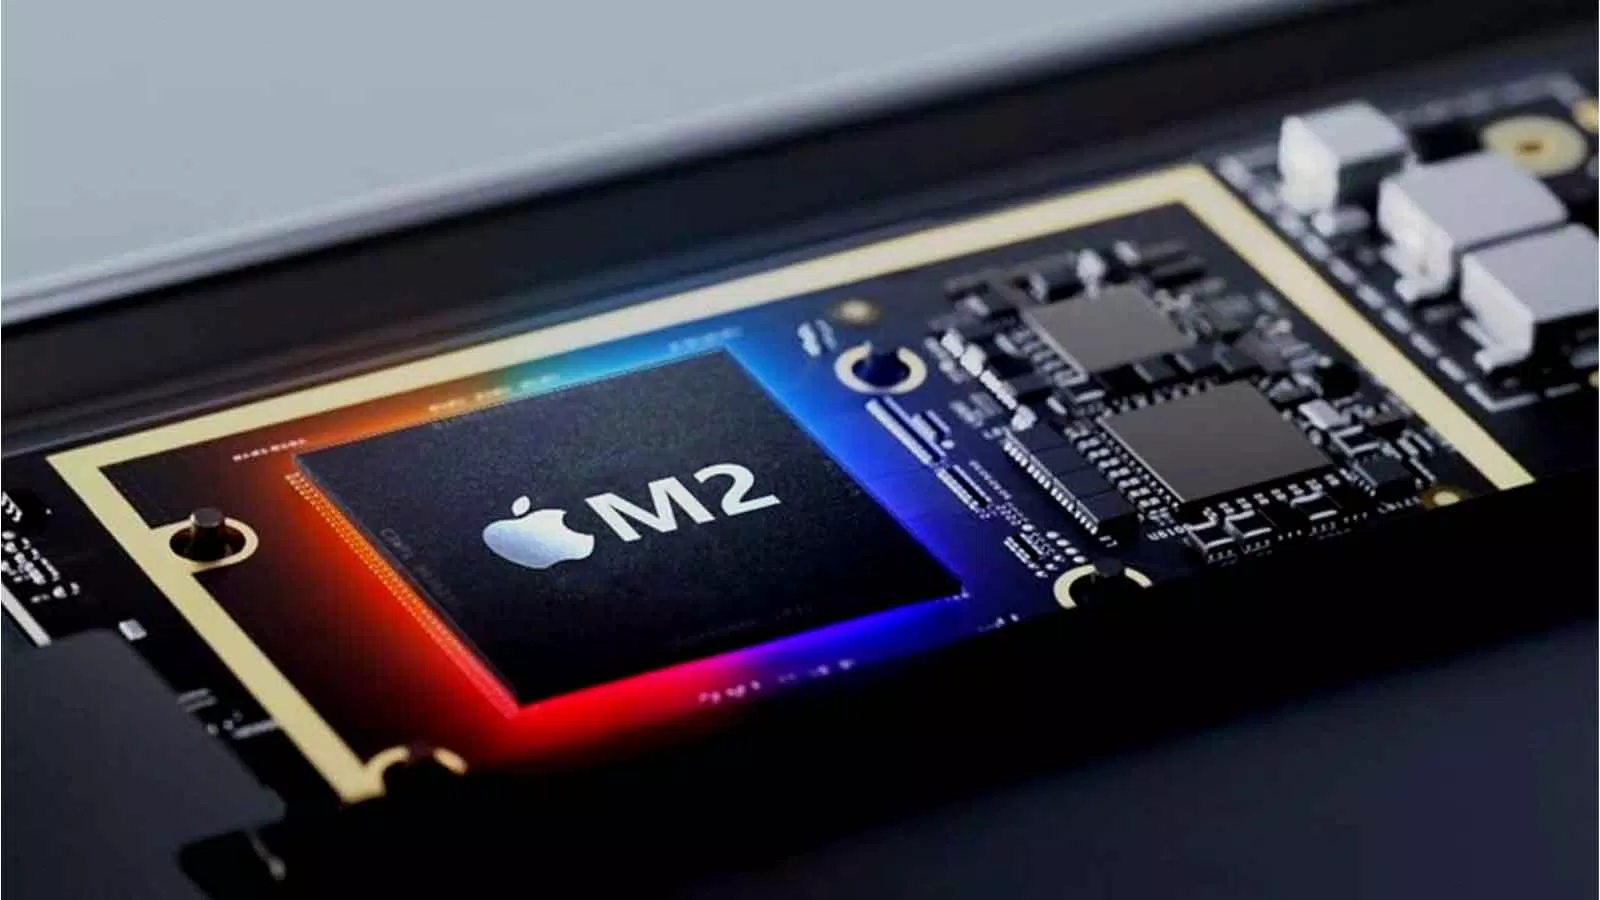 Lỗ hổng bảo mật chip M1 và M2: Apple đối mặt lựa chọn khó khăn giữa hiệu suất và an ninh An ninh apple bảo mật chip M1 và M2 CryptoKit giải pháp GoFetch hiệu suất khó khăn lựa chọn nguy cơ thách thức